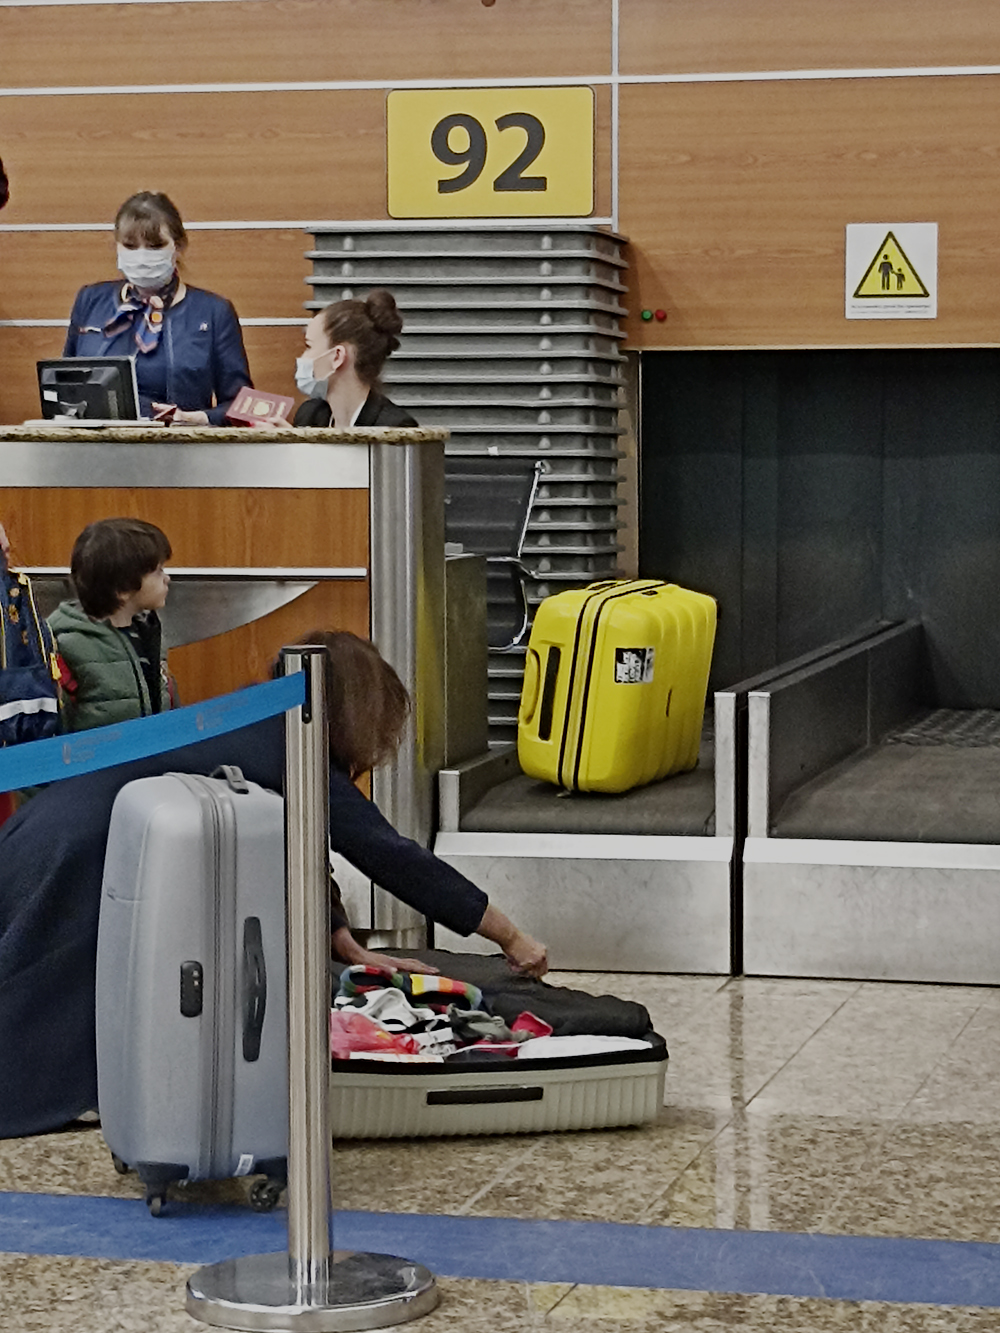 Нередко можно встретить ситуацию, когда пассажир перекладывает свои вещи, чтобы уложиться в норму провоза багажа